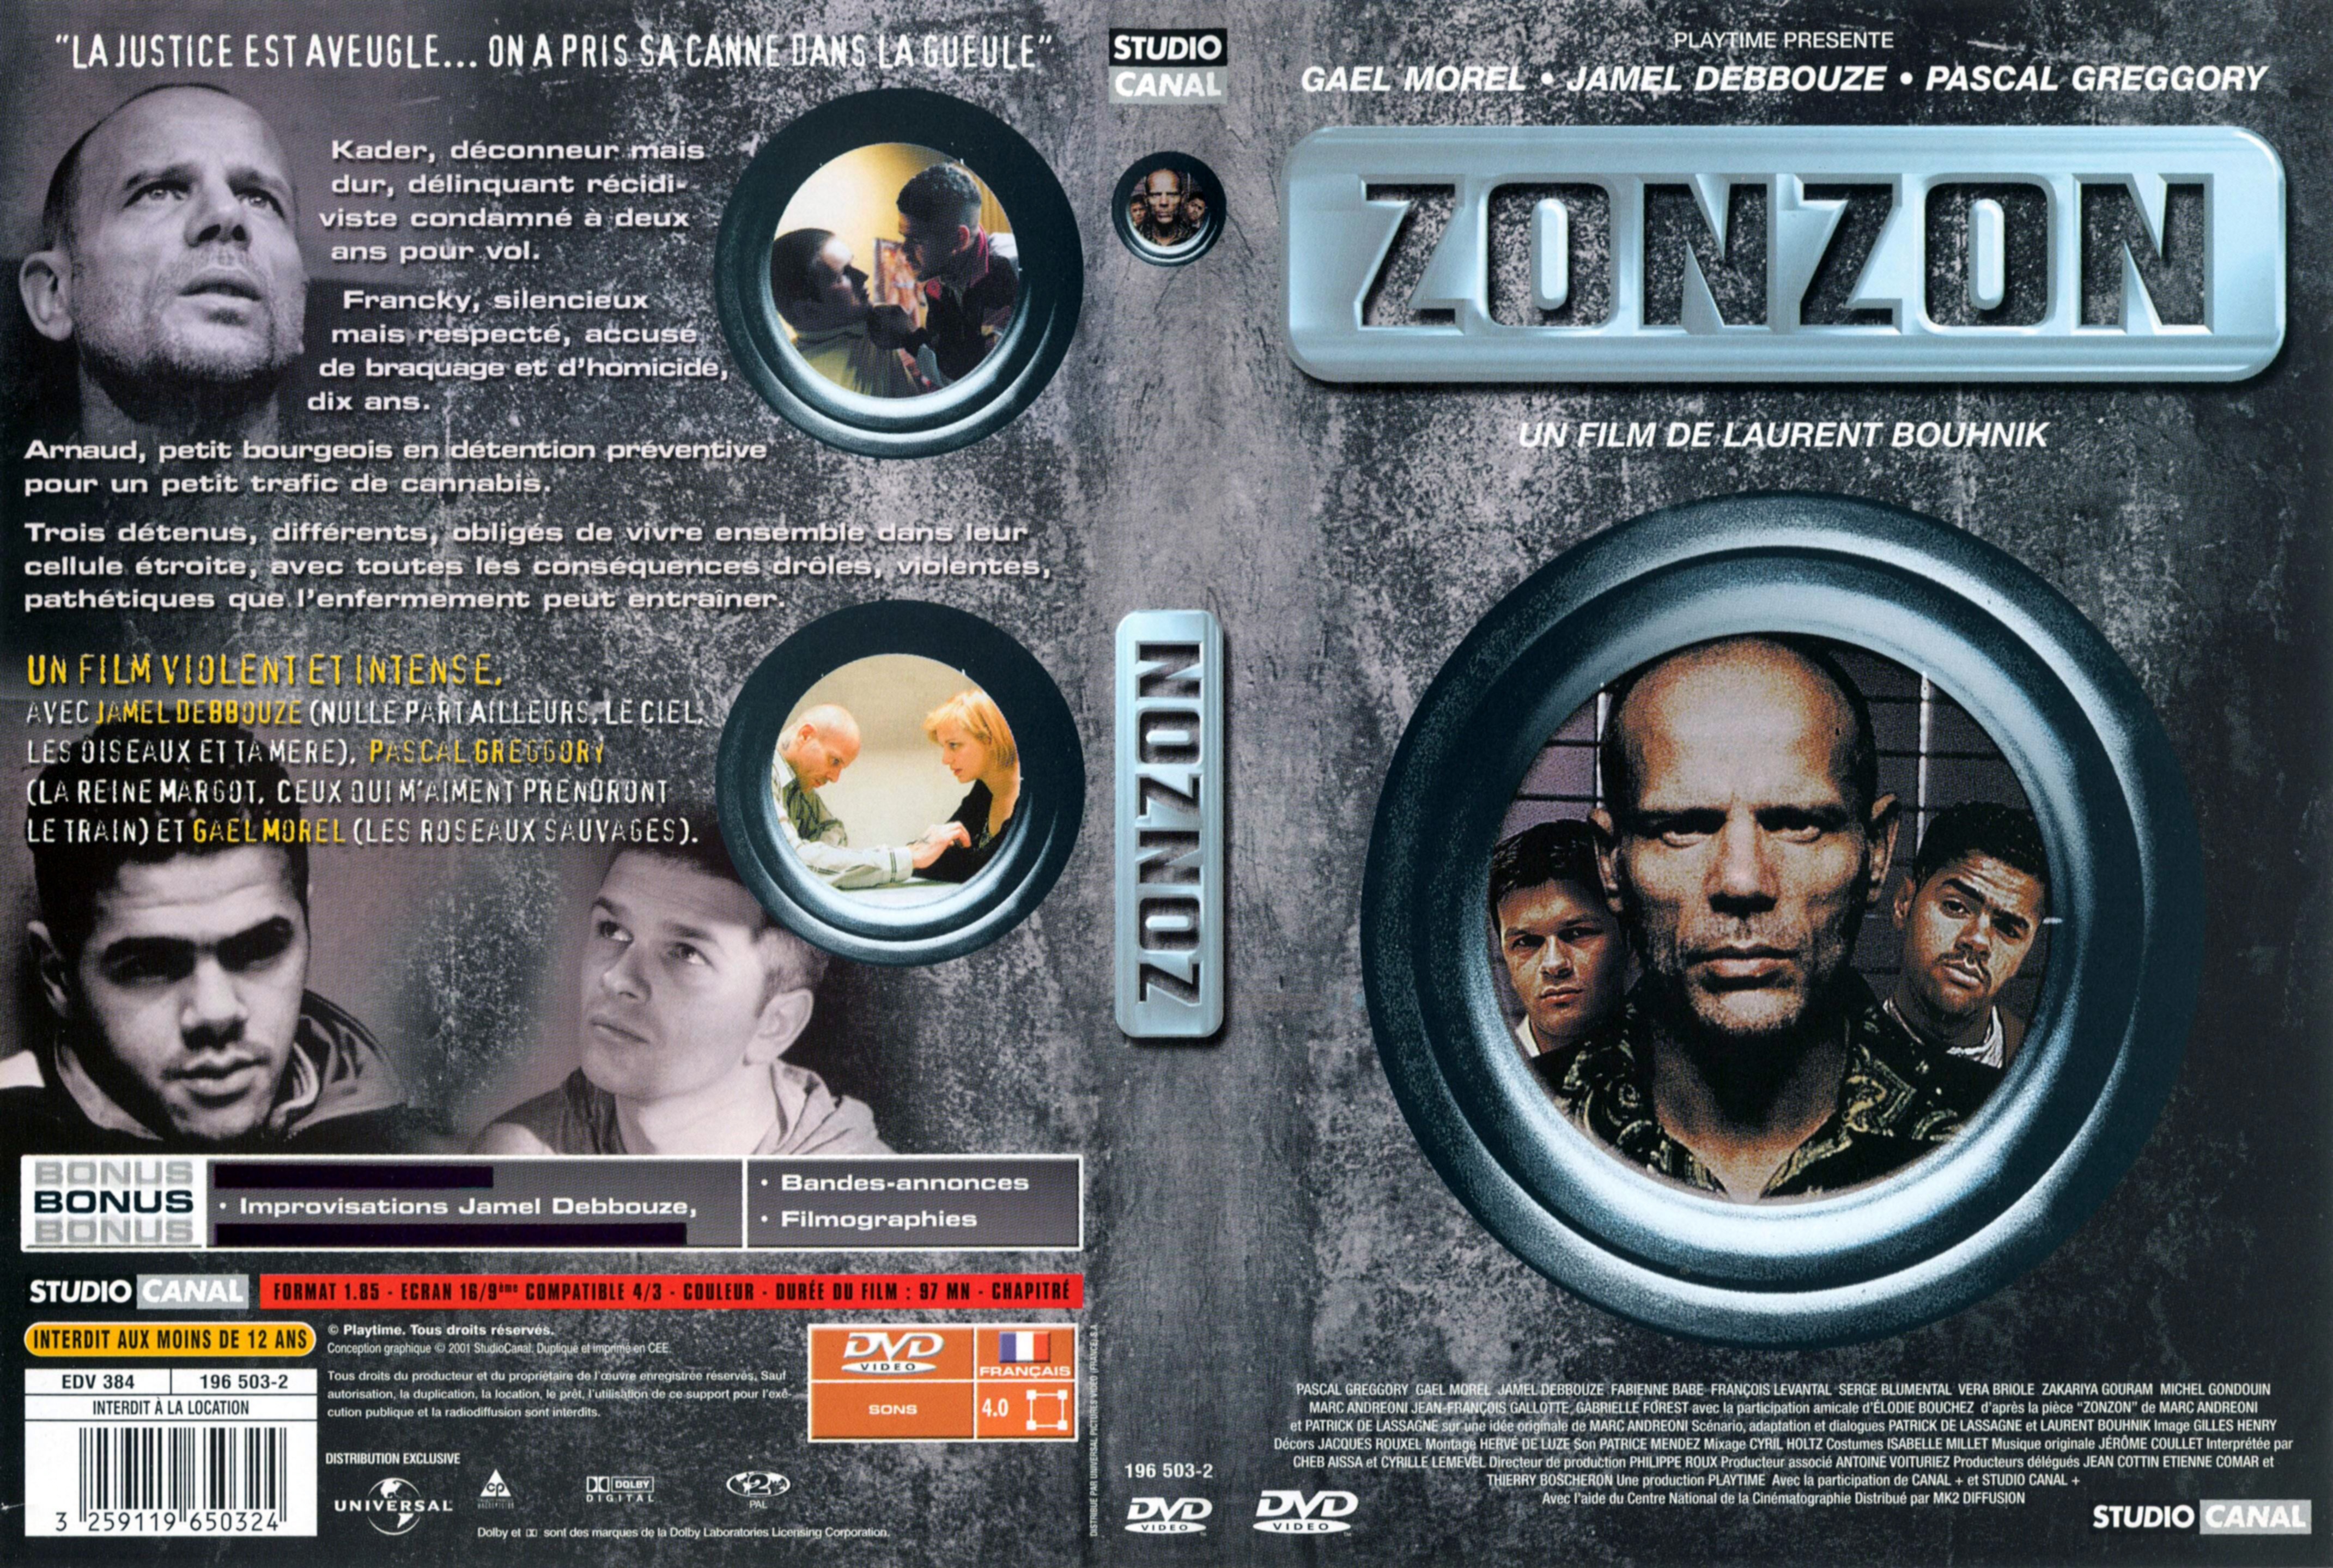 Jaquette DVD Zonzon